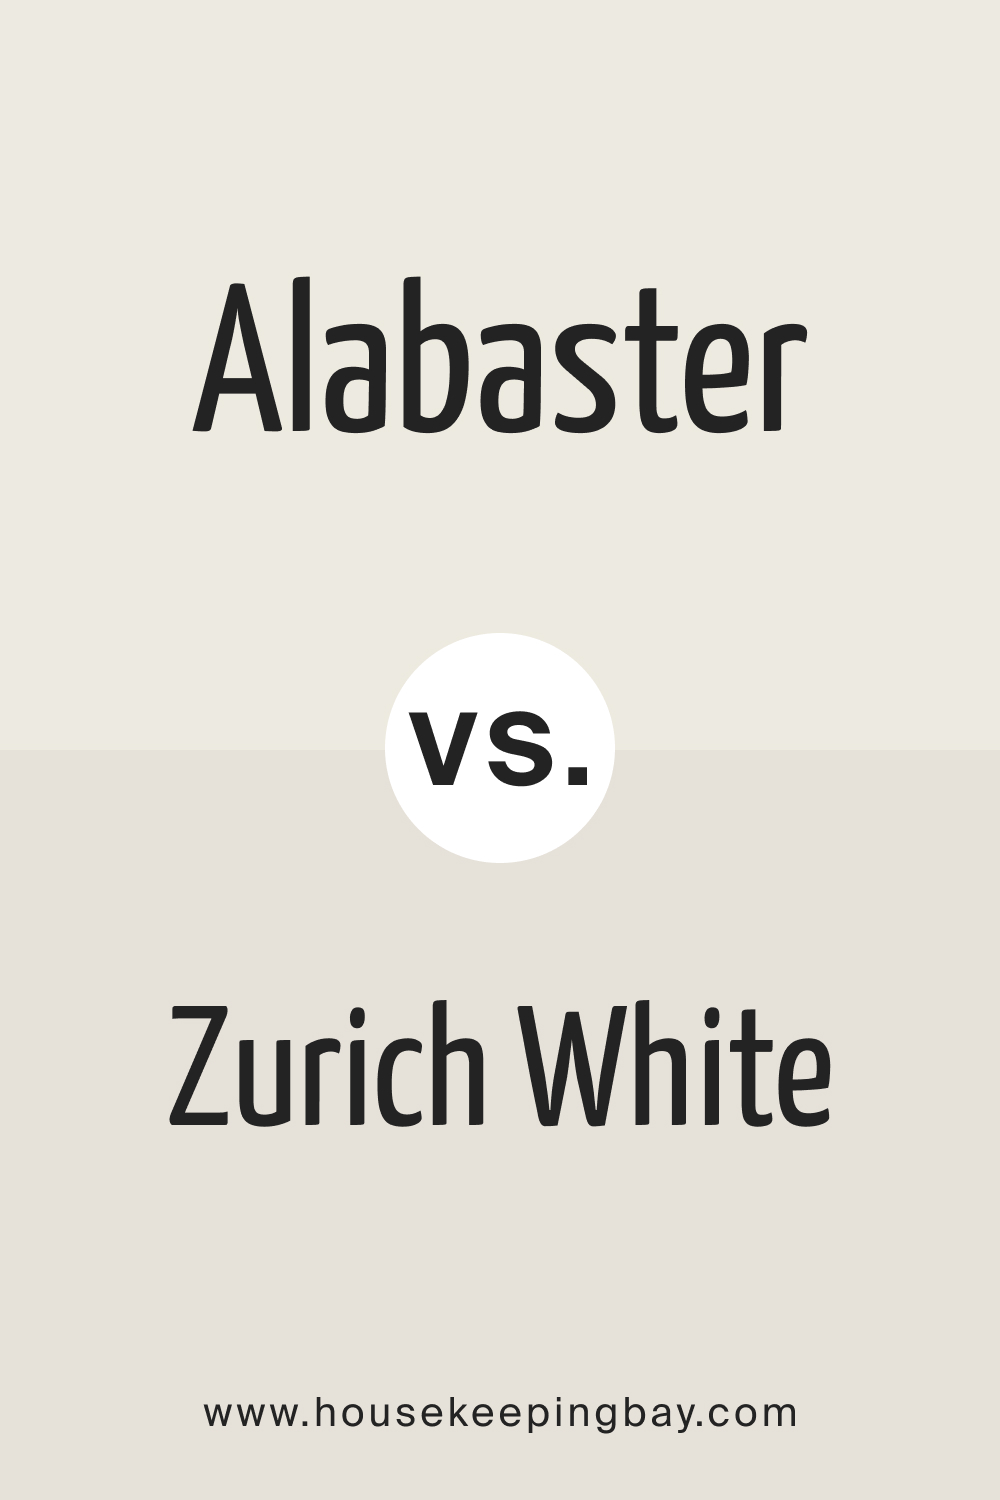 Alabaster vs. Zurich White